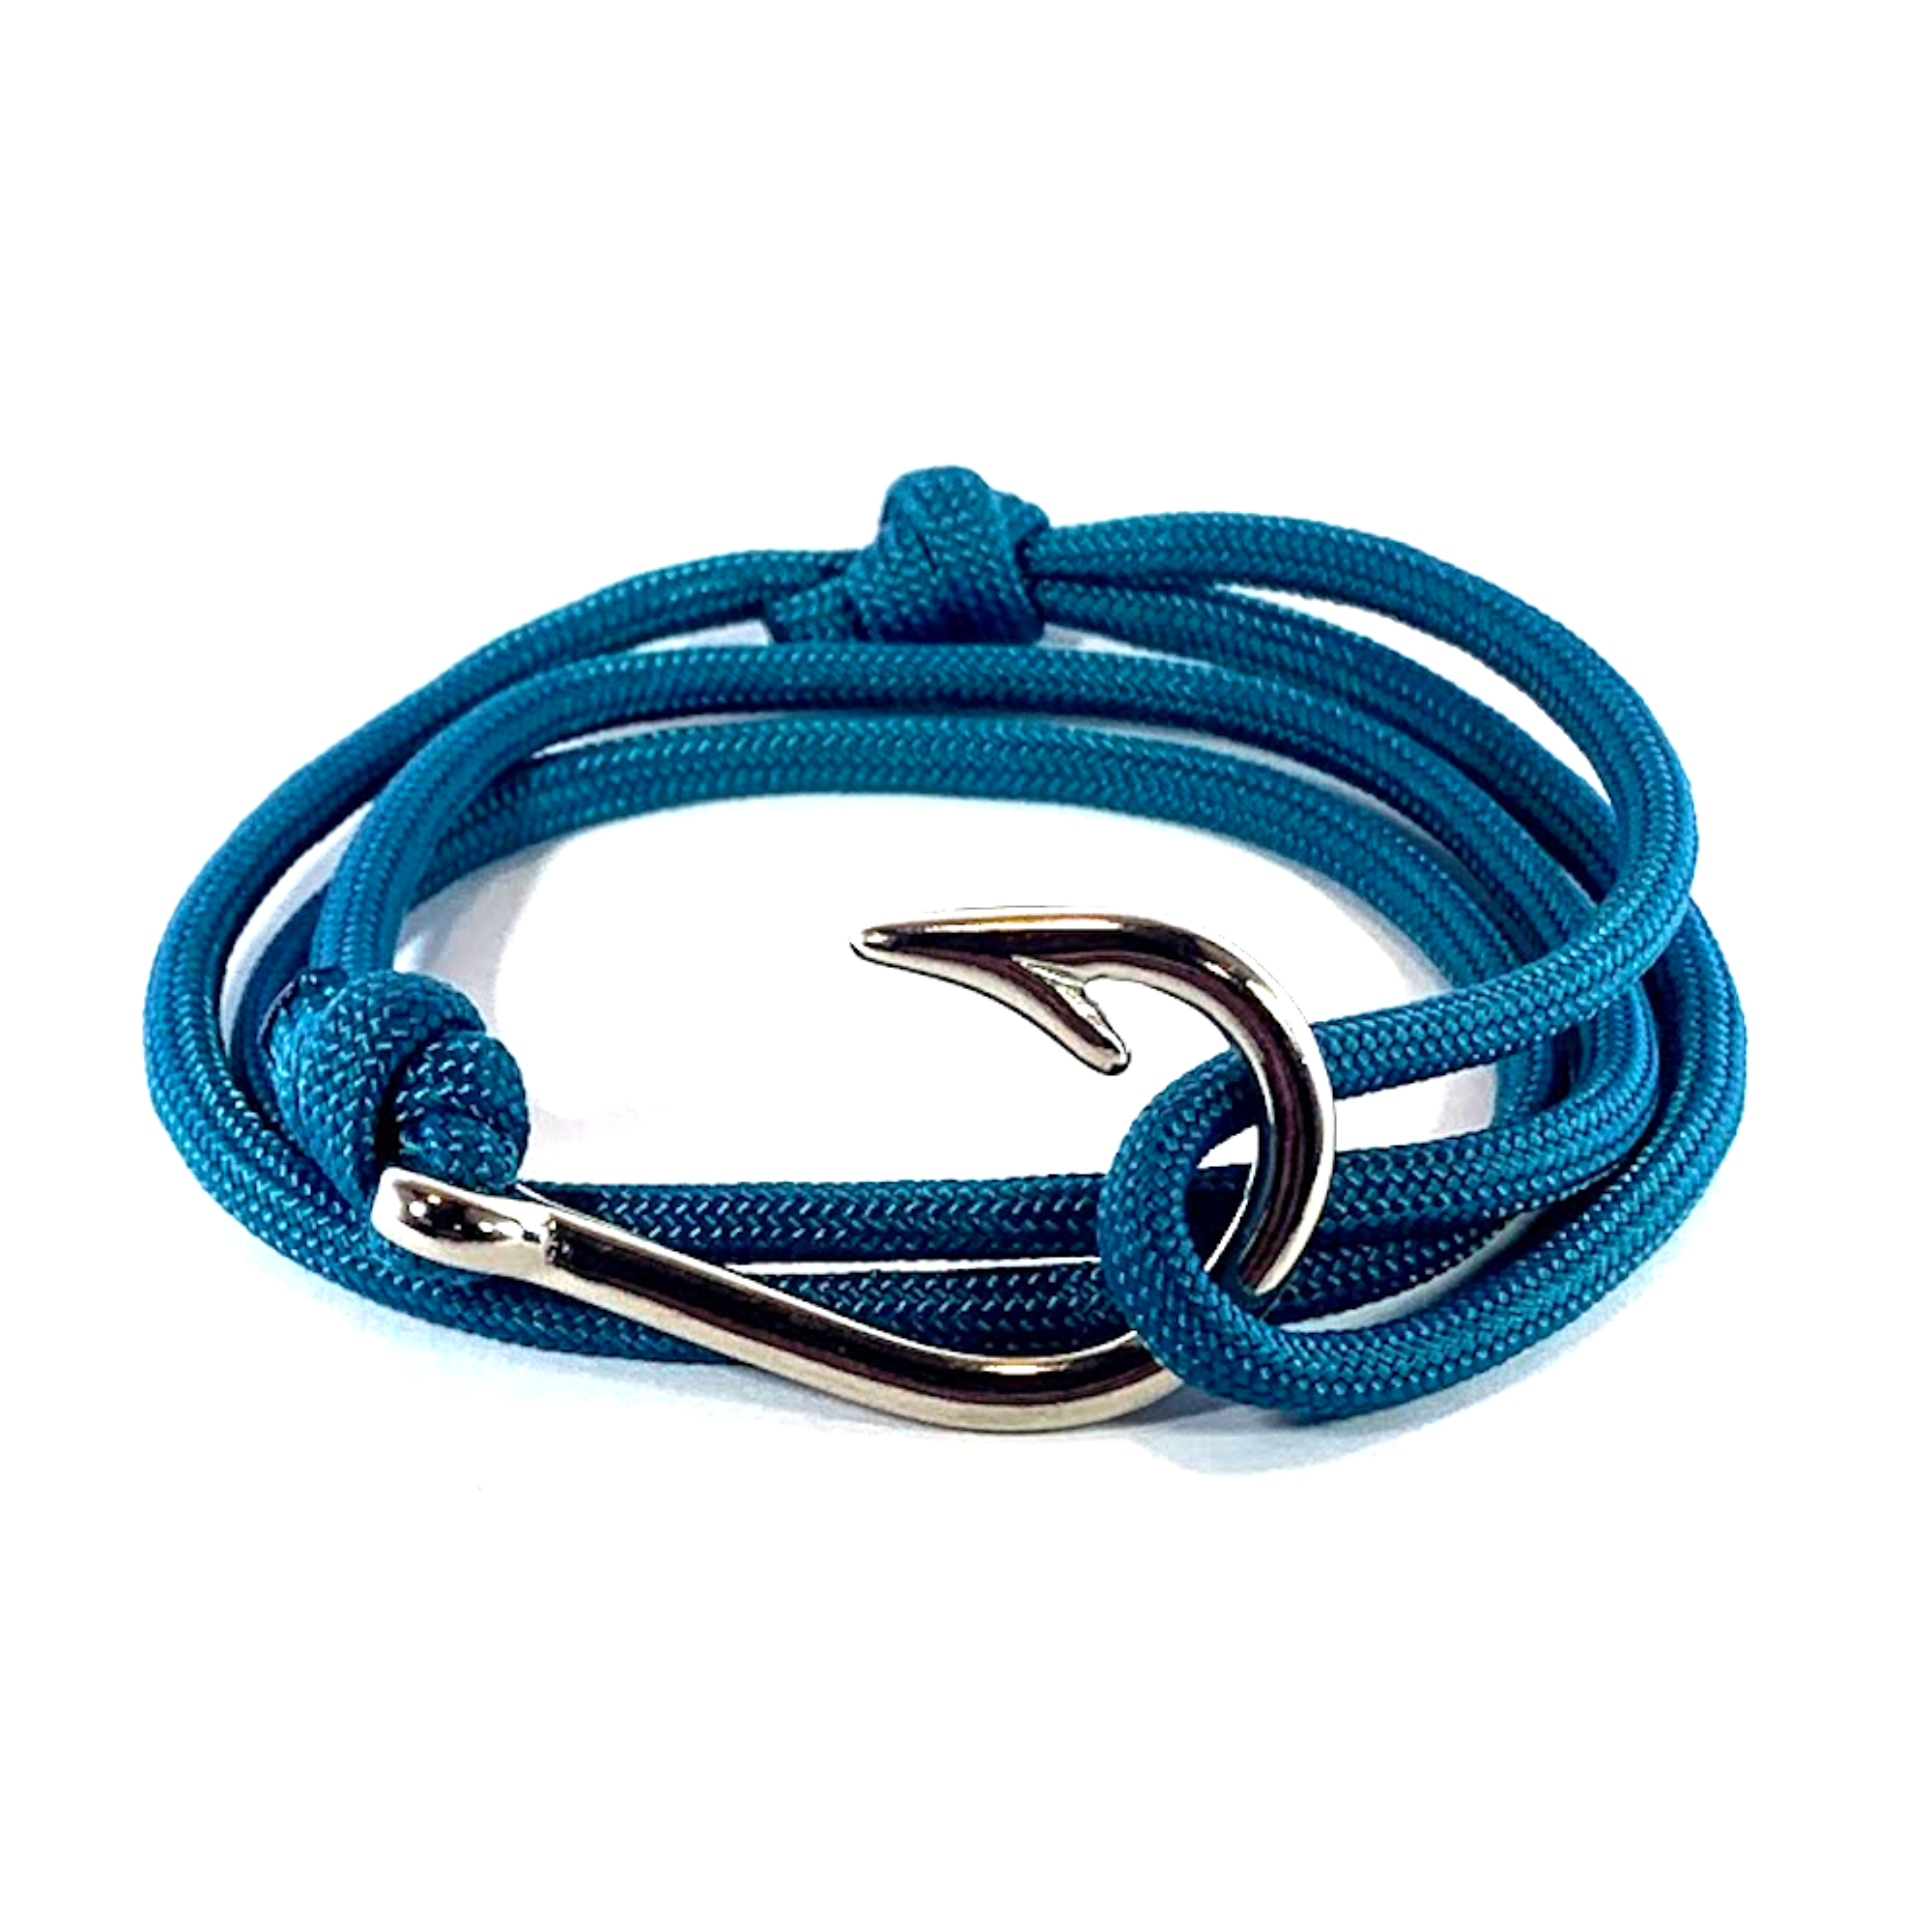  Riptide Vibes Adjustable Fish Hook Bracelet - Made in